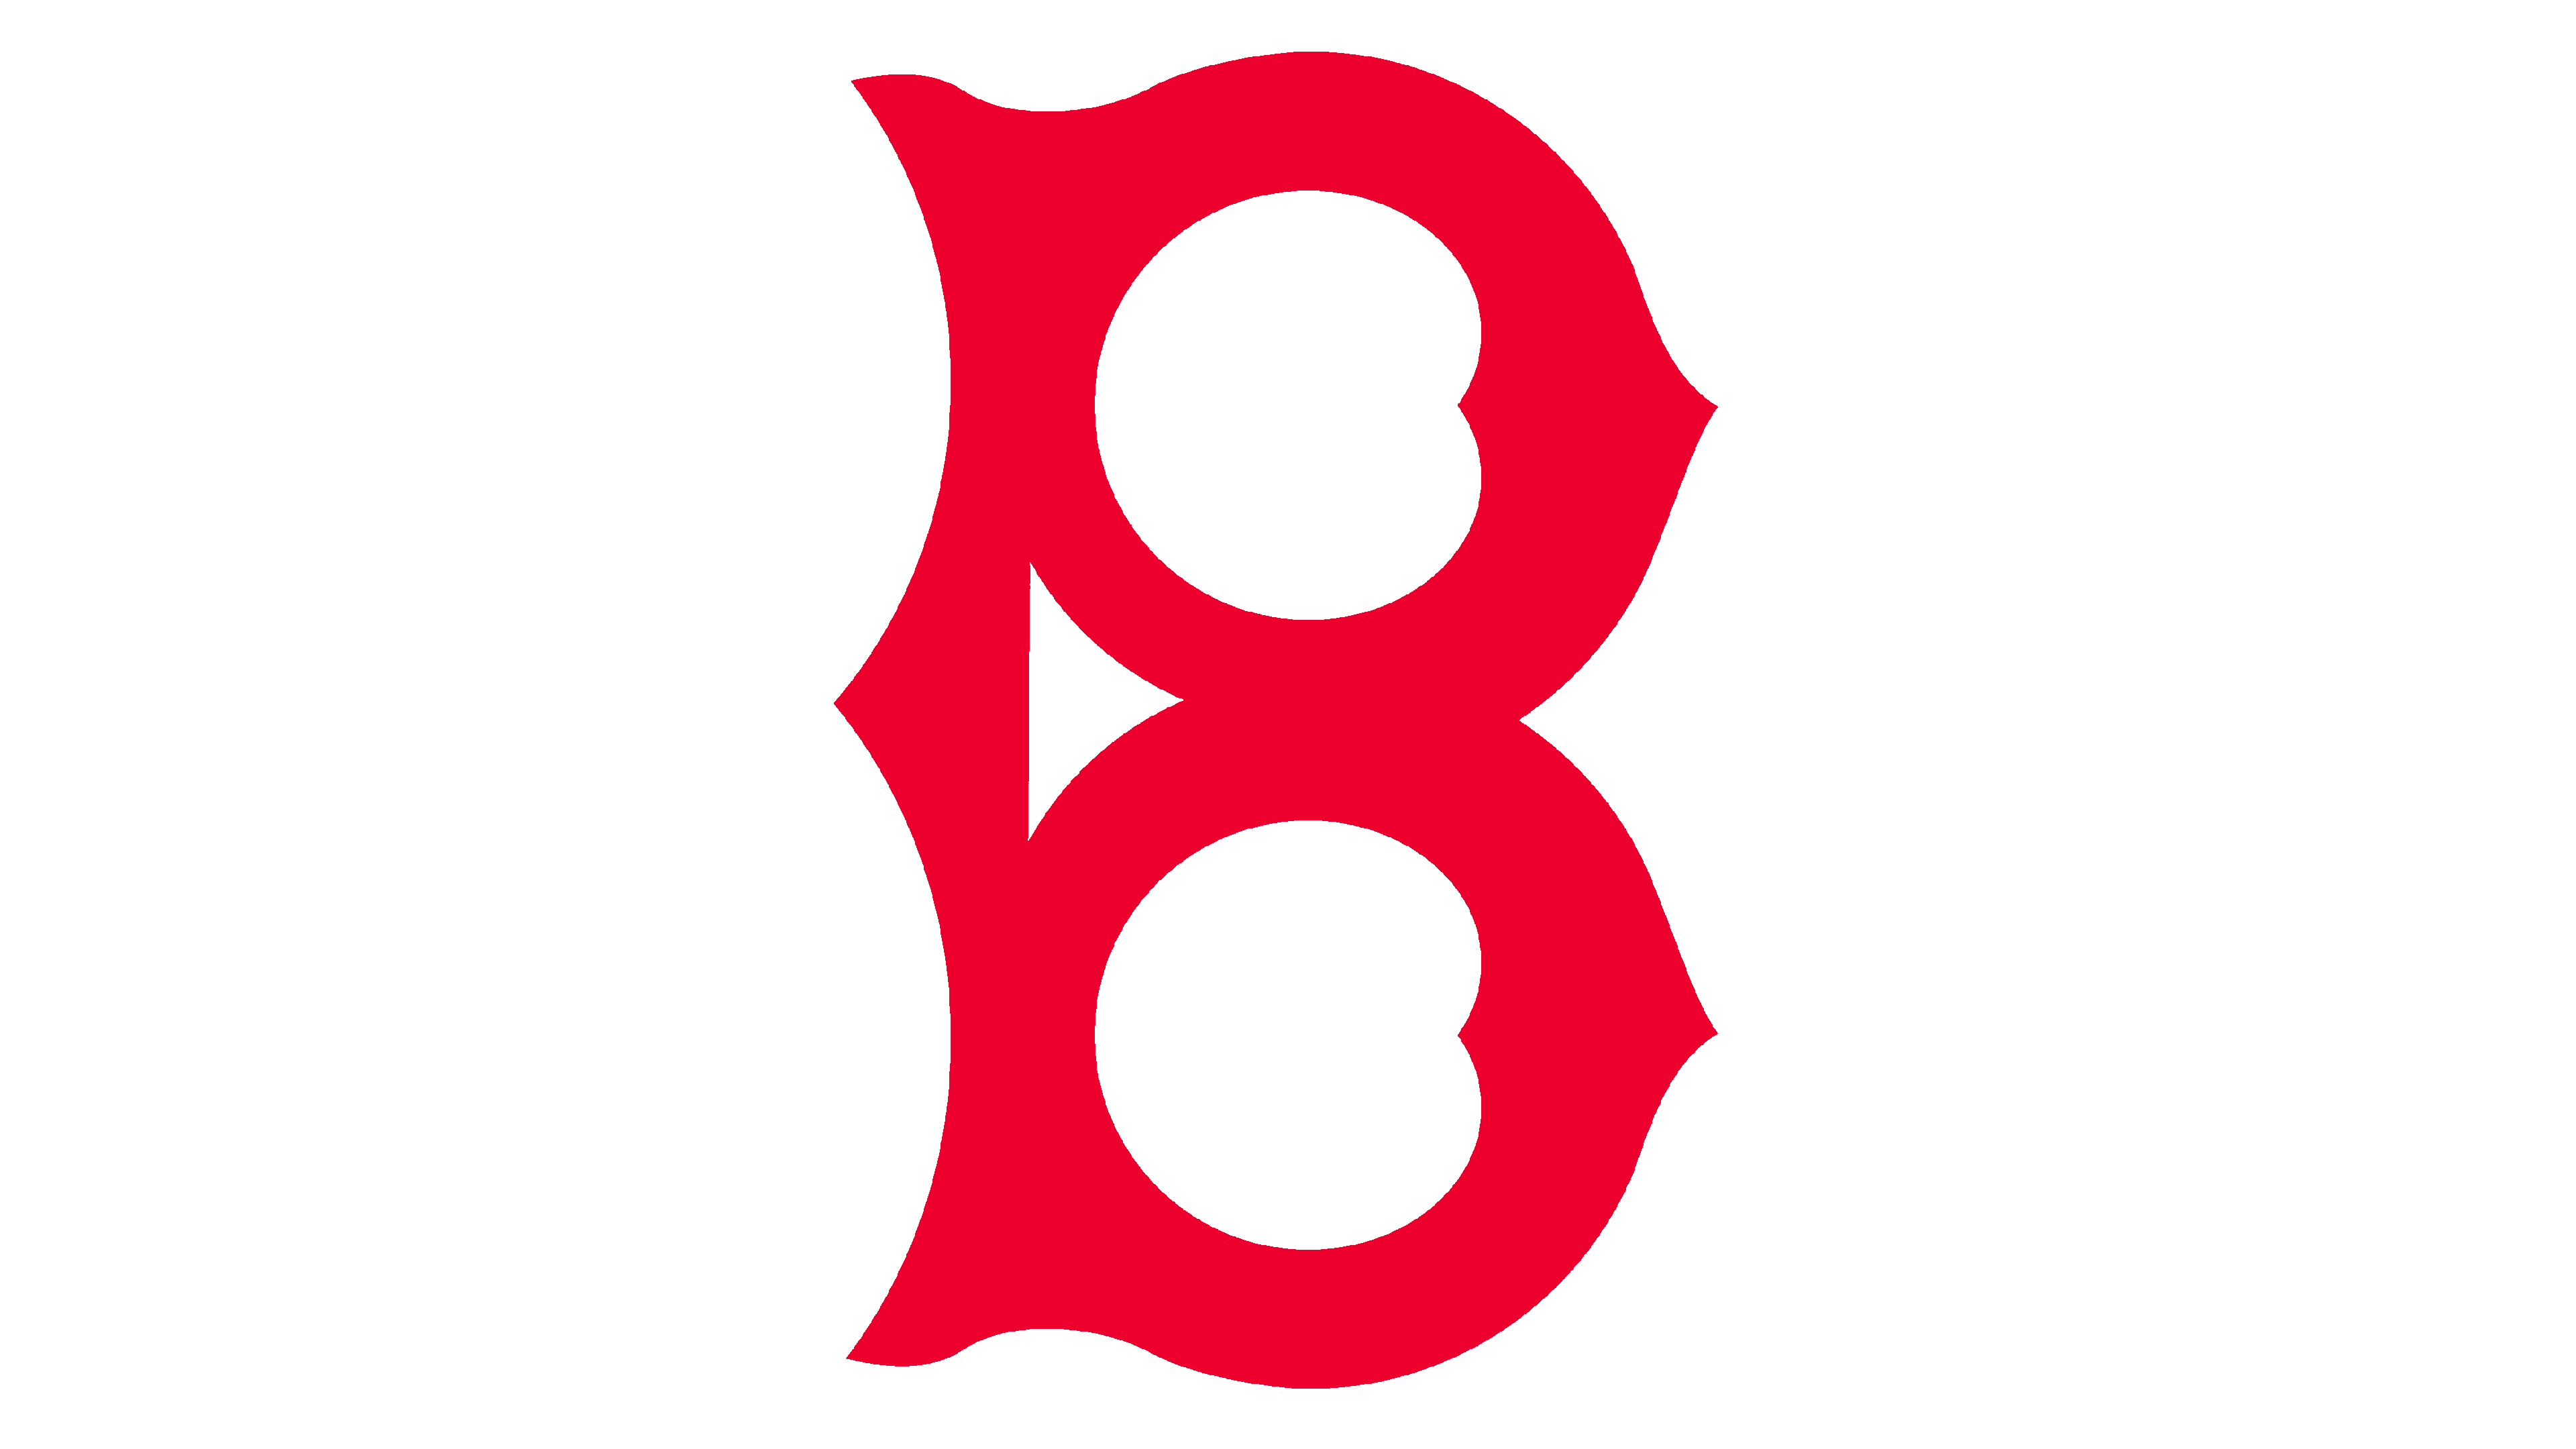 Atlanta Braves Logo PNG Transparent Images - PNG All